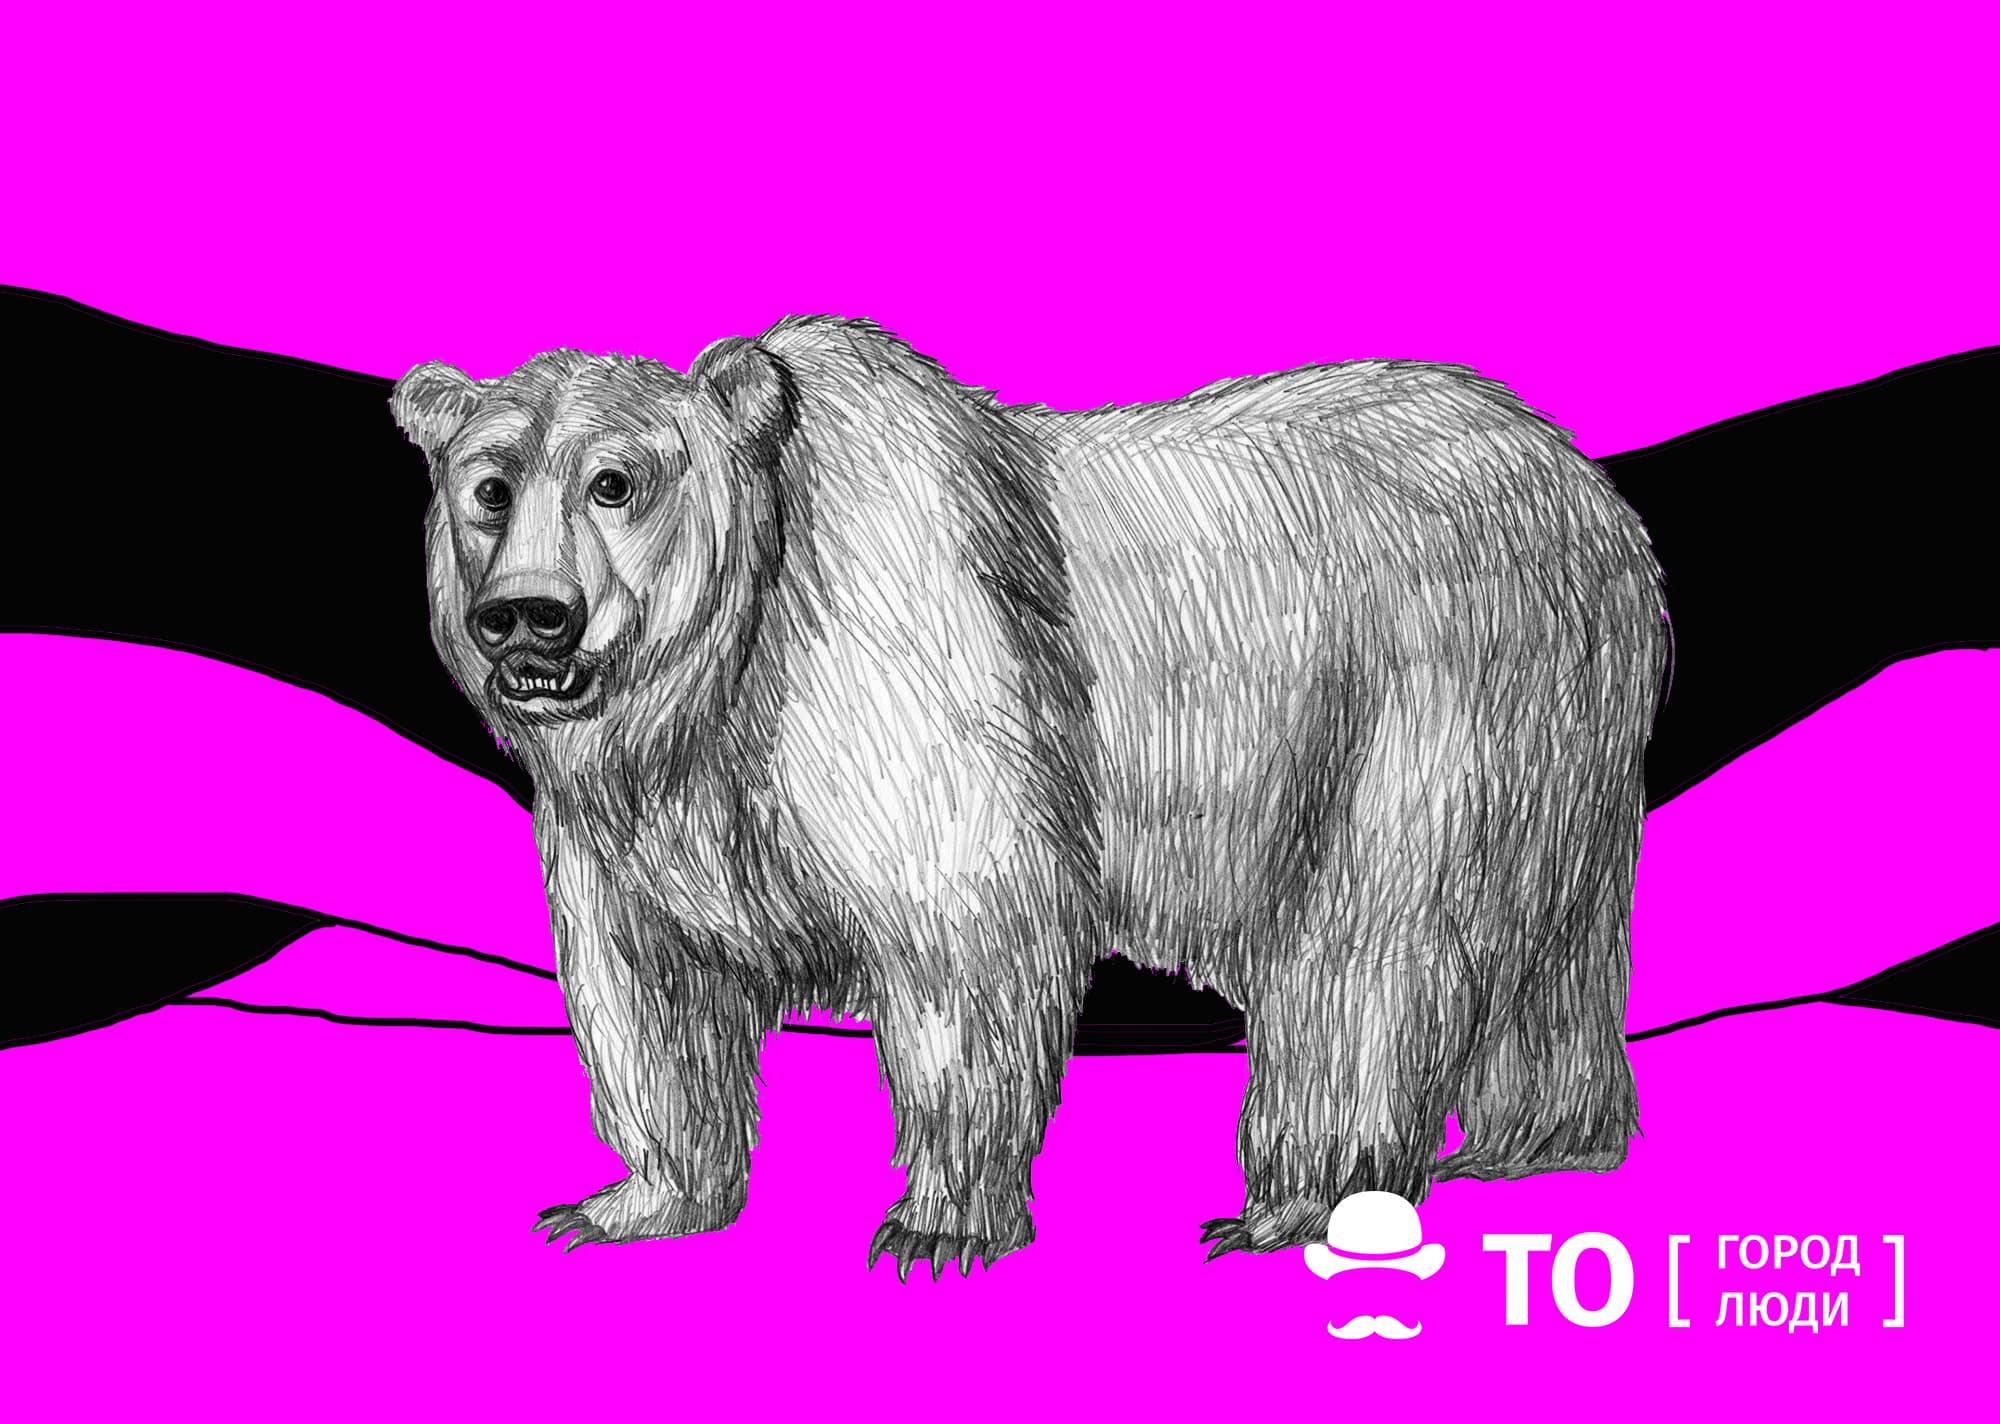 Охота, Погода и природа, Томские новости, томск медведь интерфакс усть-речка колпашевский район истомин В одном из сел Томской области охотники застрелили крупного медведя